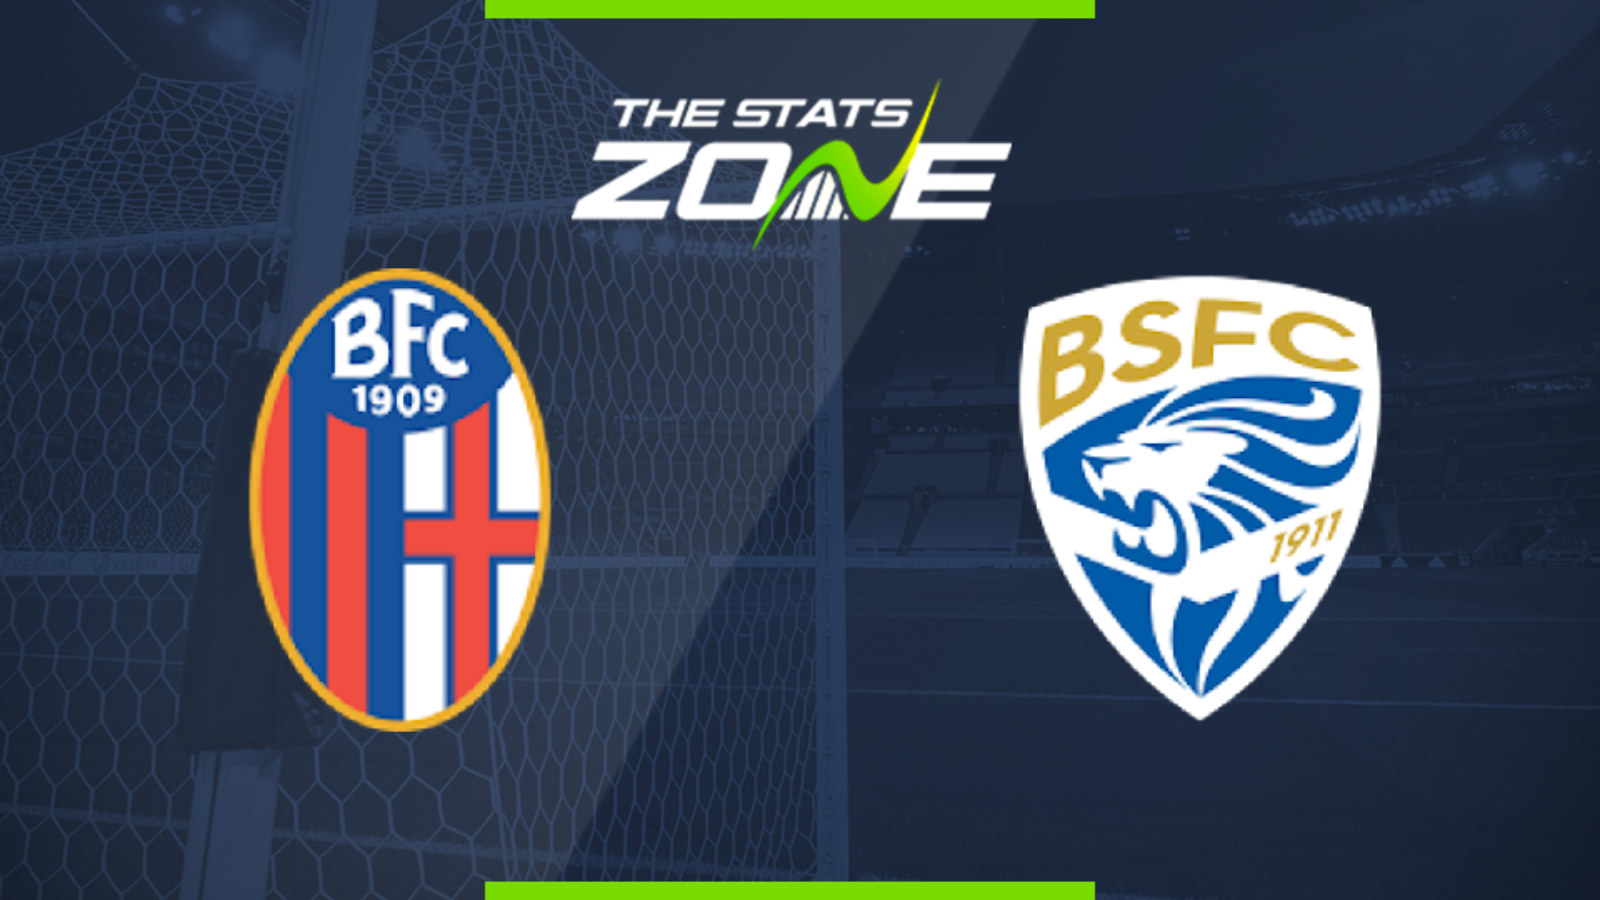 2019 20 Serie A Bologna Vs Brescia Preview Prediction The Stats Zone